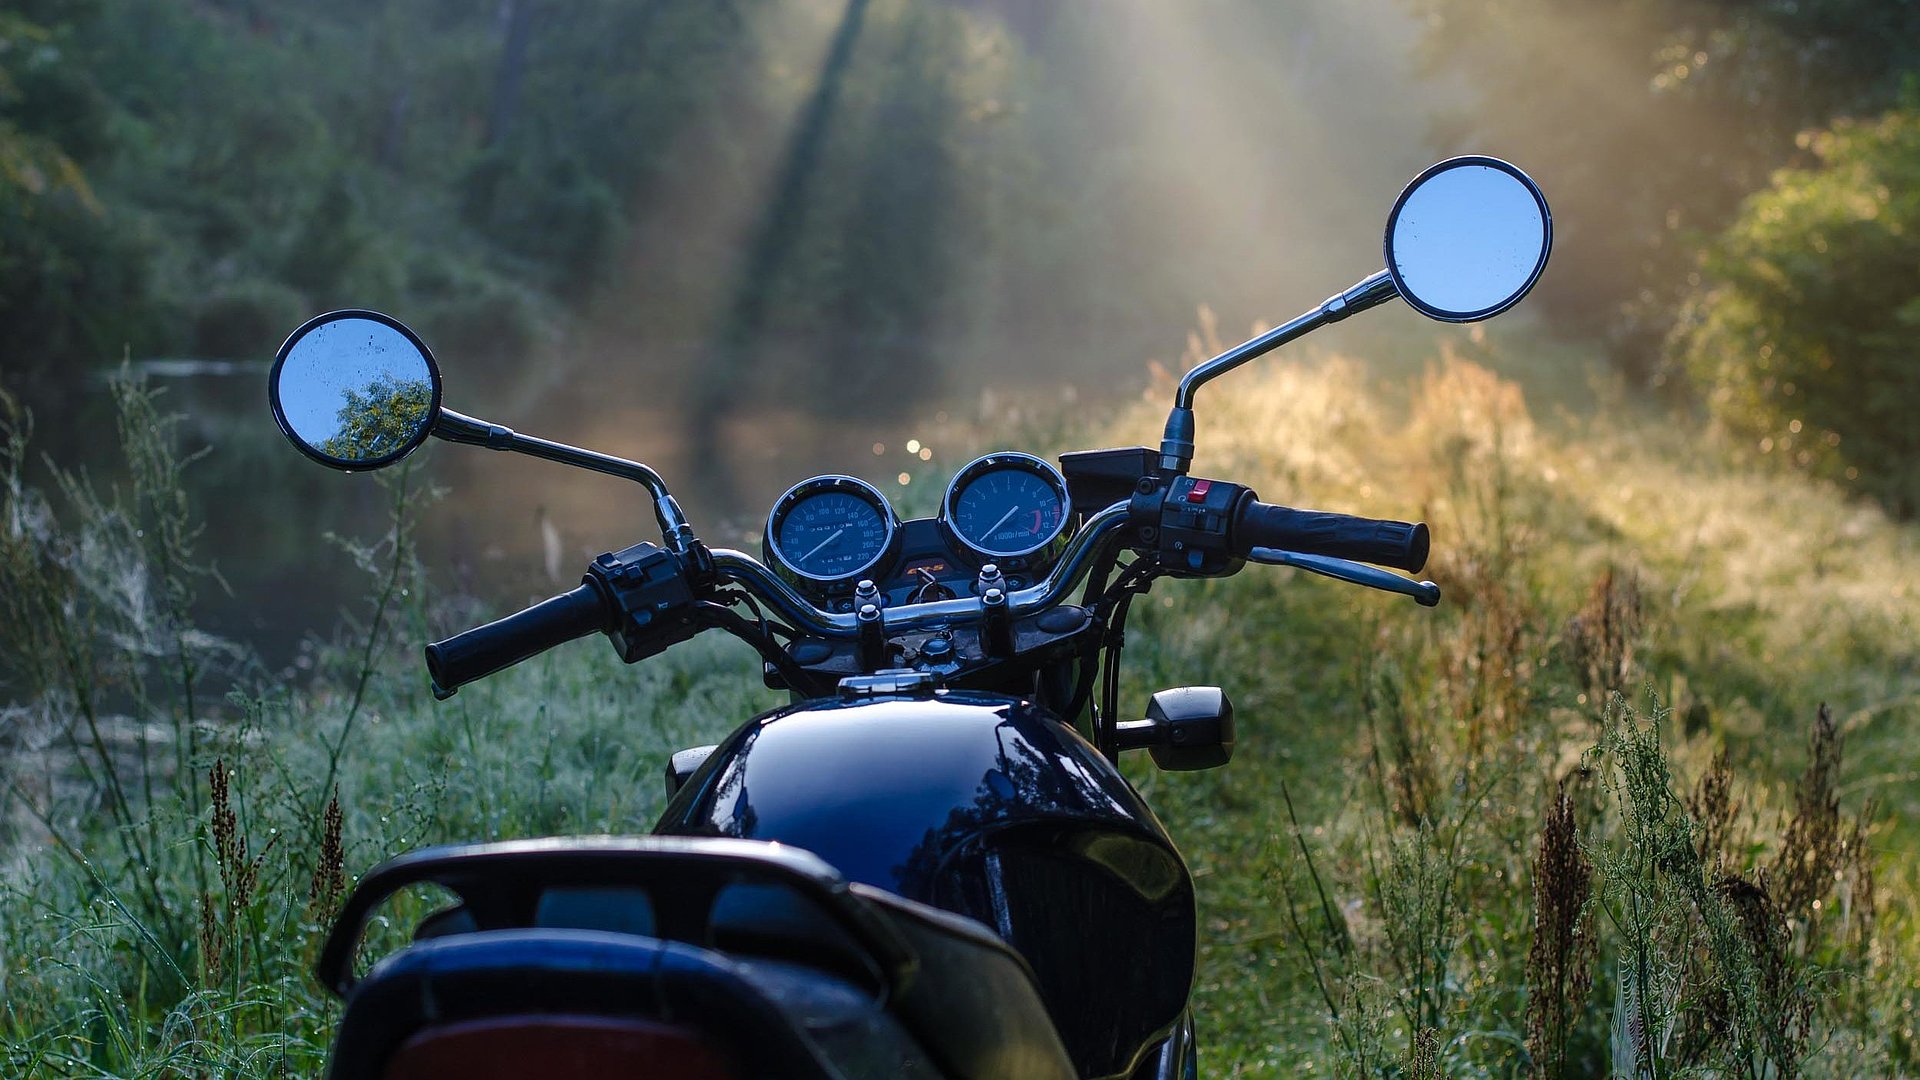 Motorrad-Urlaub in der Fränkischen Schweiz - Motorrad im Wald